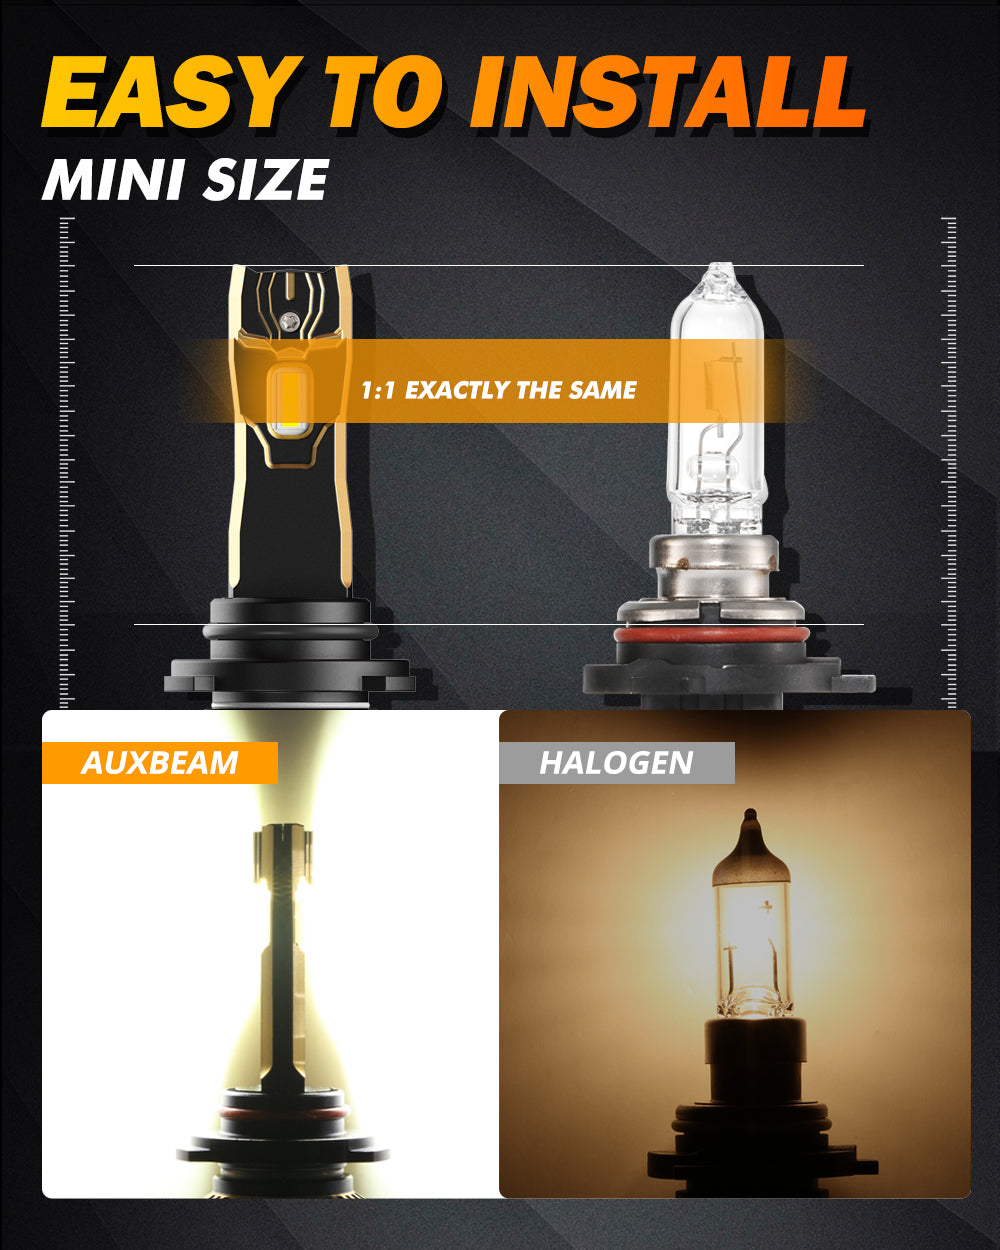 Auxbeam® 9006 led headlight bulb